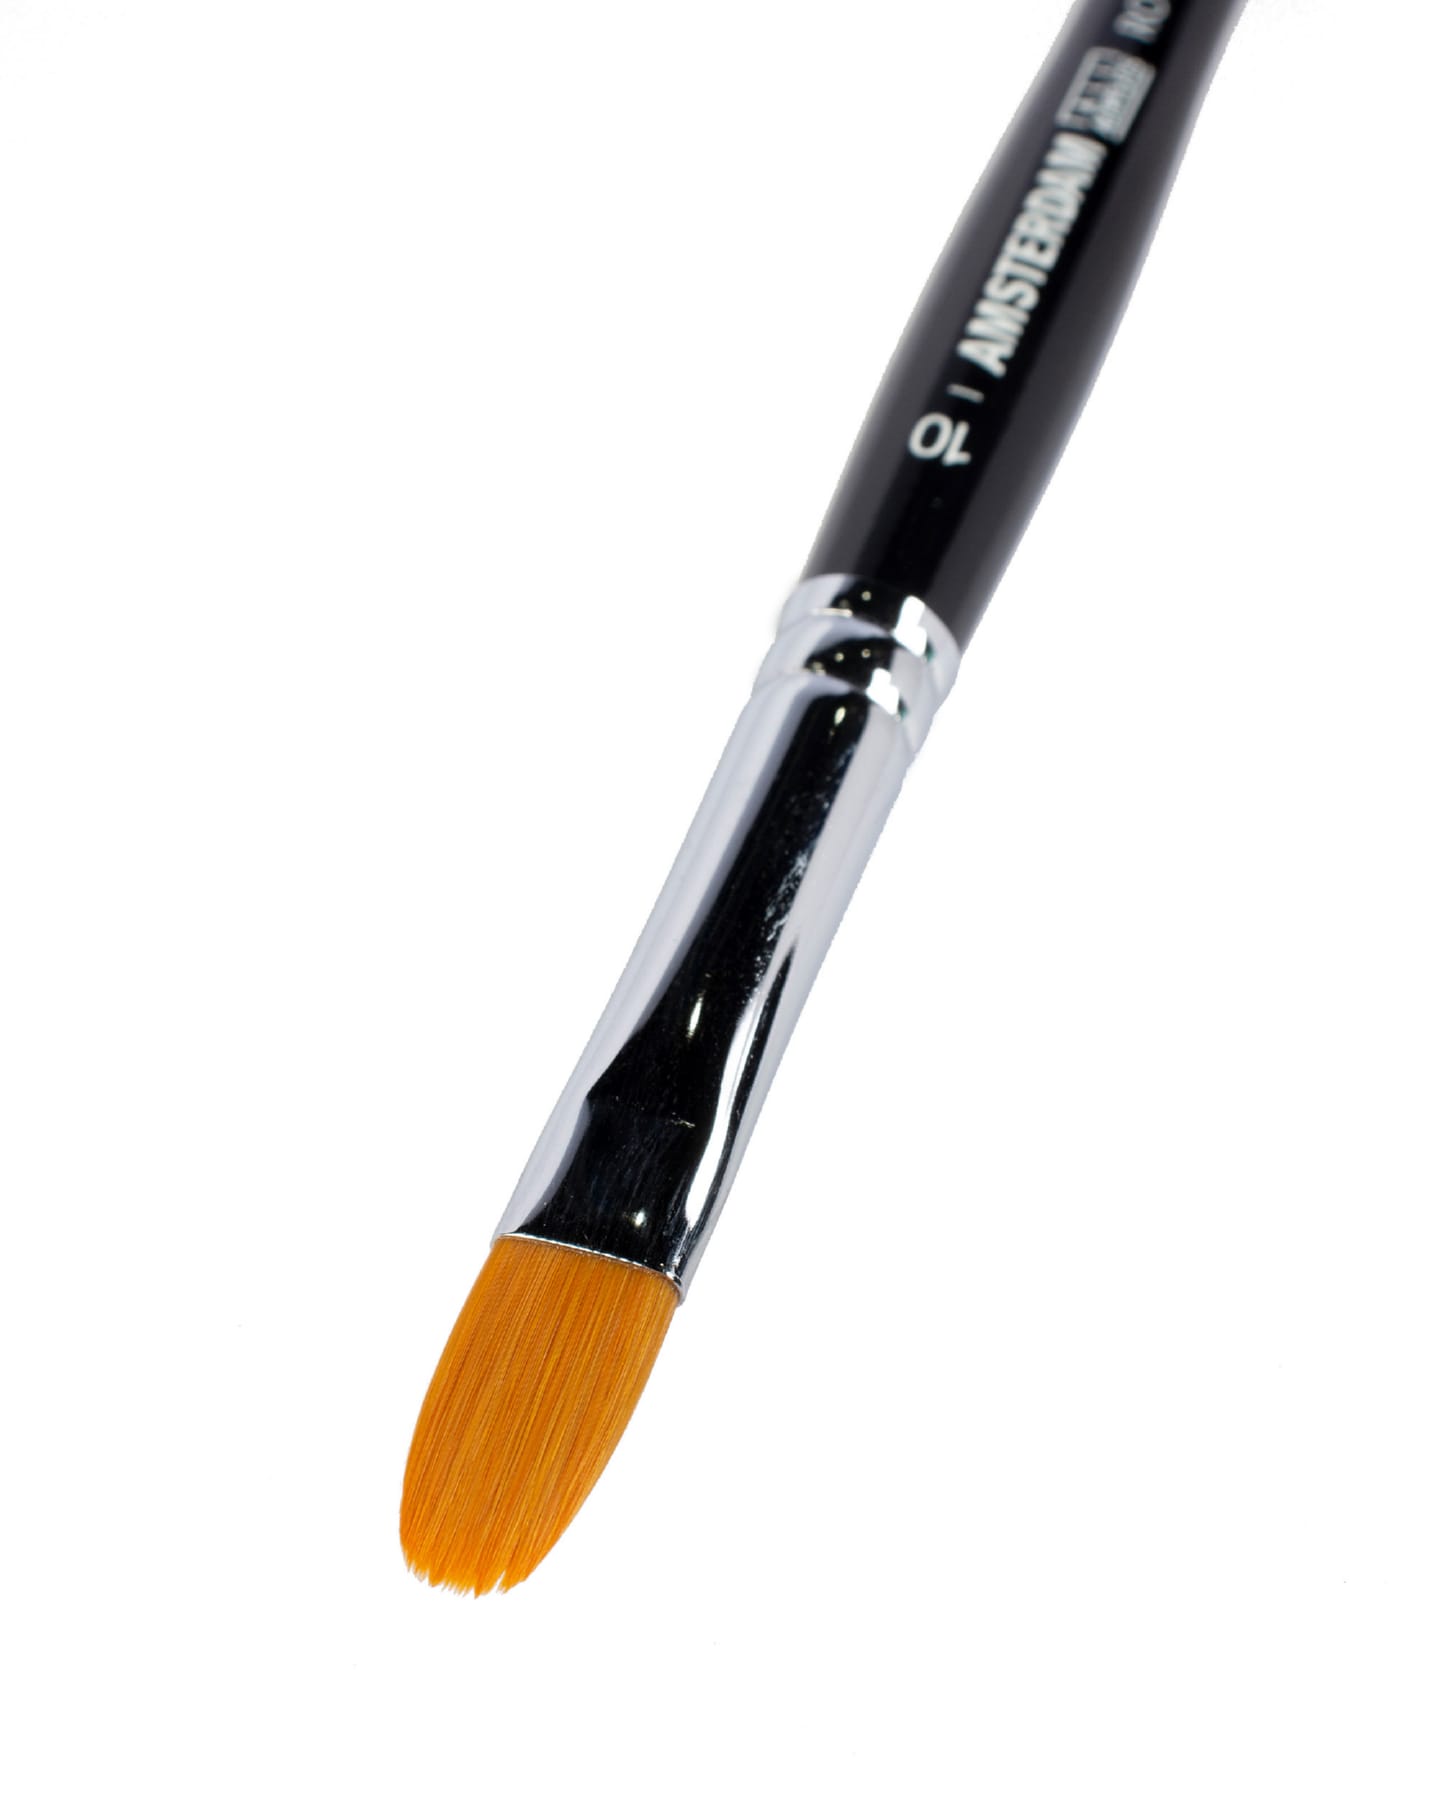 Кисть для акрила Amsterdam 343 синтетика мягкая овальная ручка короткая 5 шт/упак 15 размеров в ассортименте